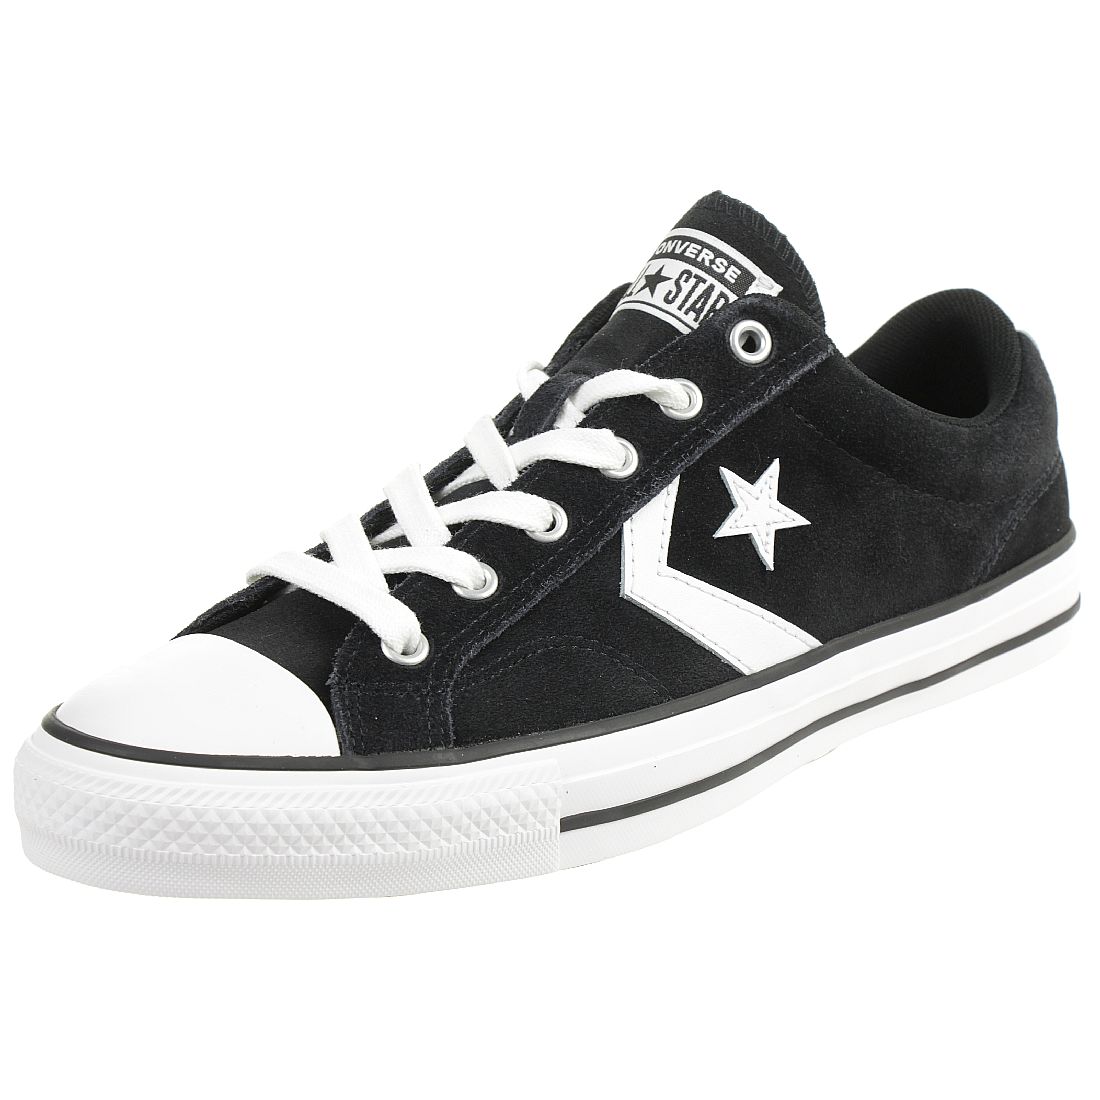 Converse STAR PLAYER OX Schuhe Sneaker Wildleder Schwarz 165466C